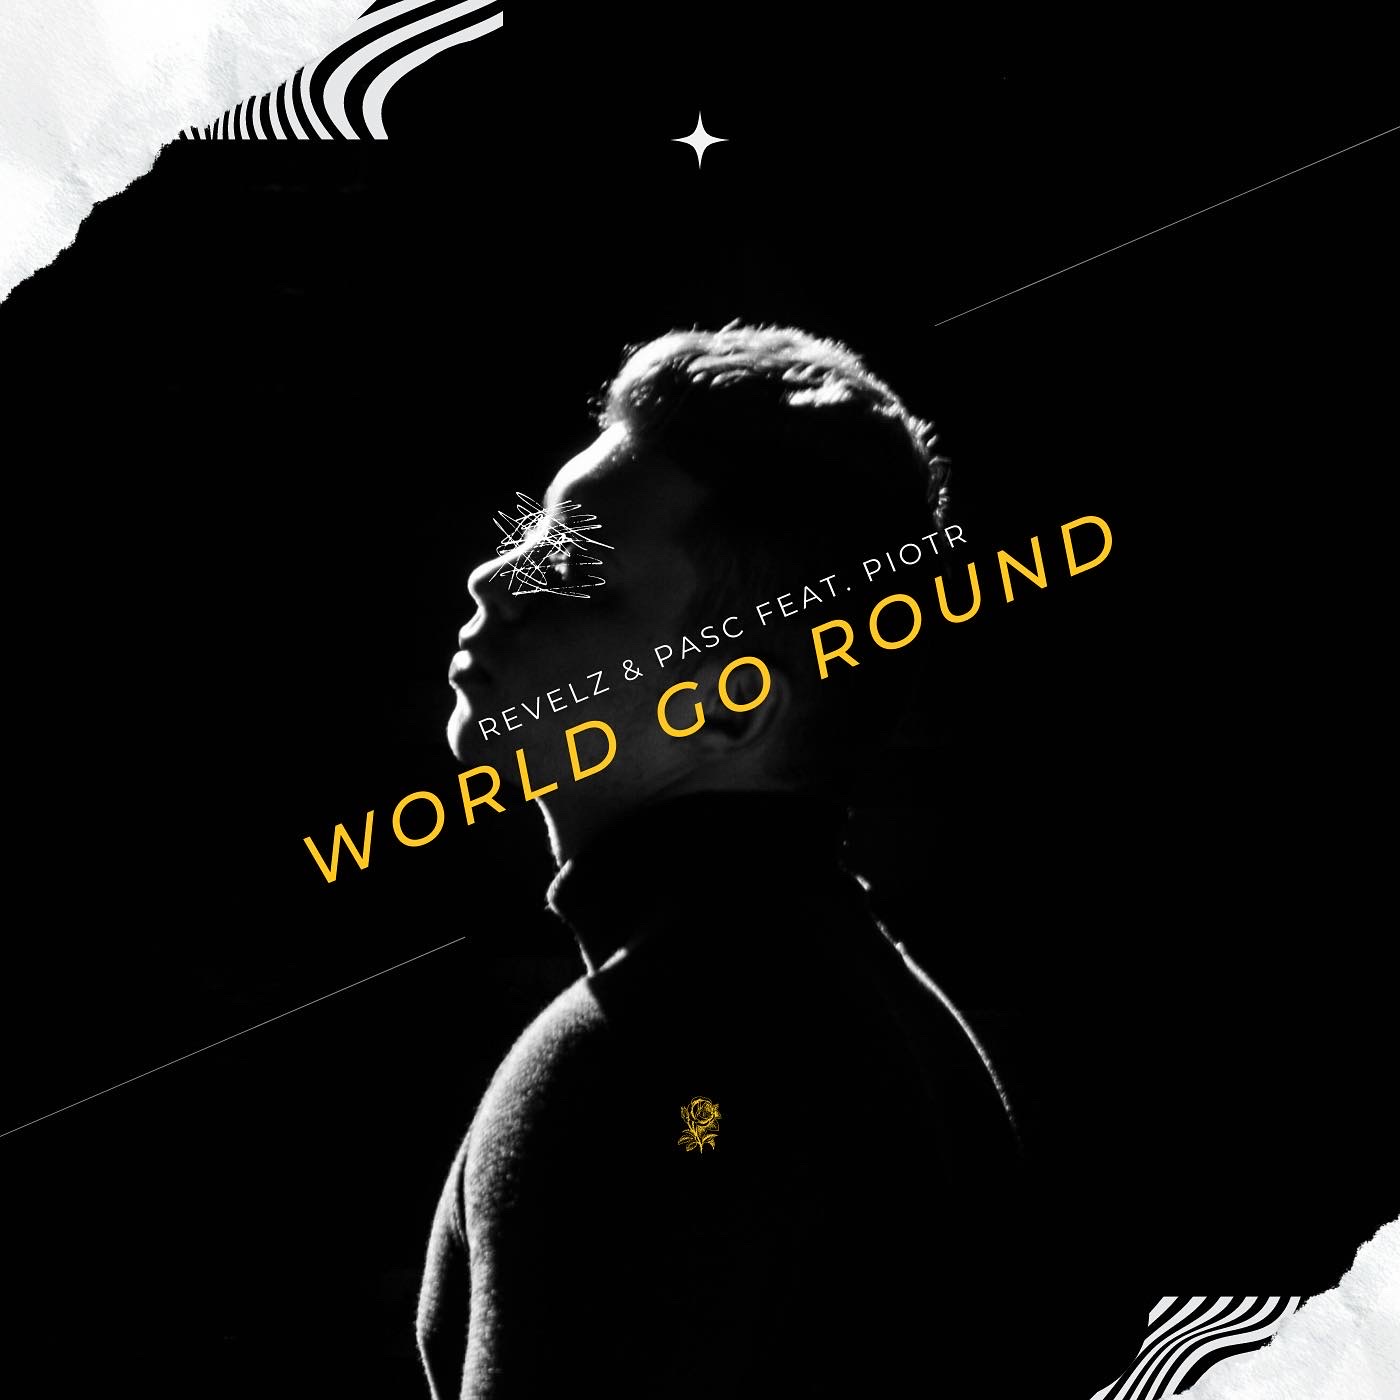 World go Round